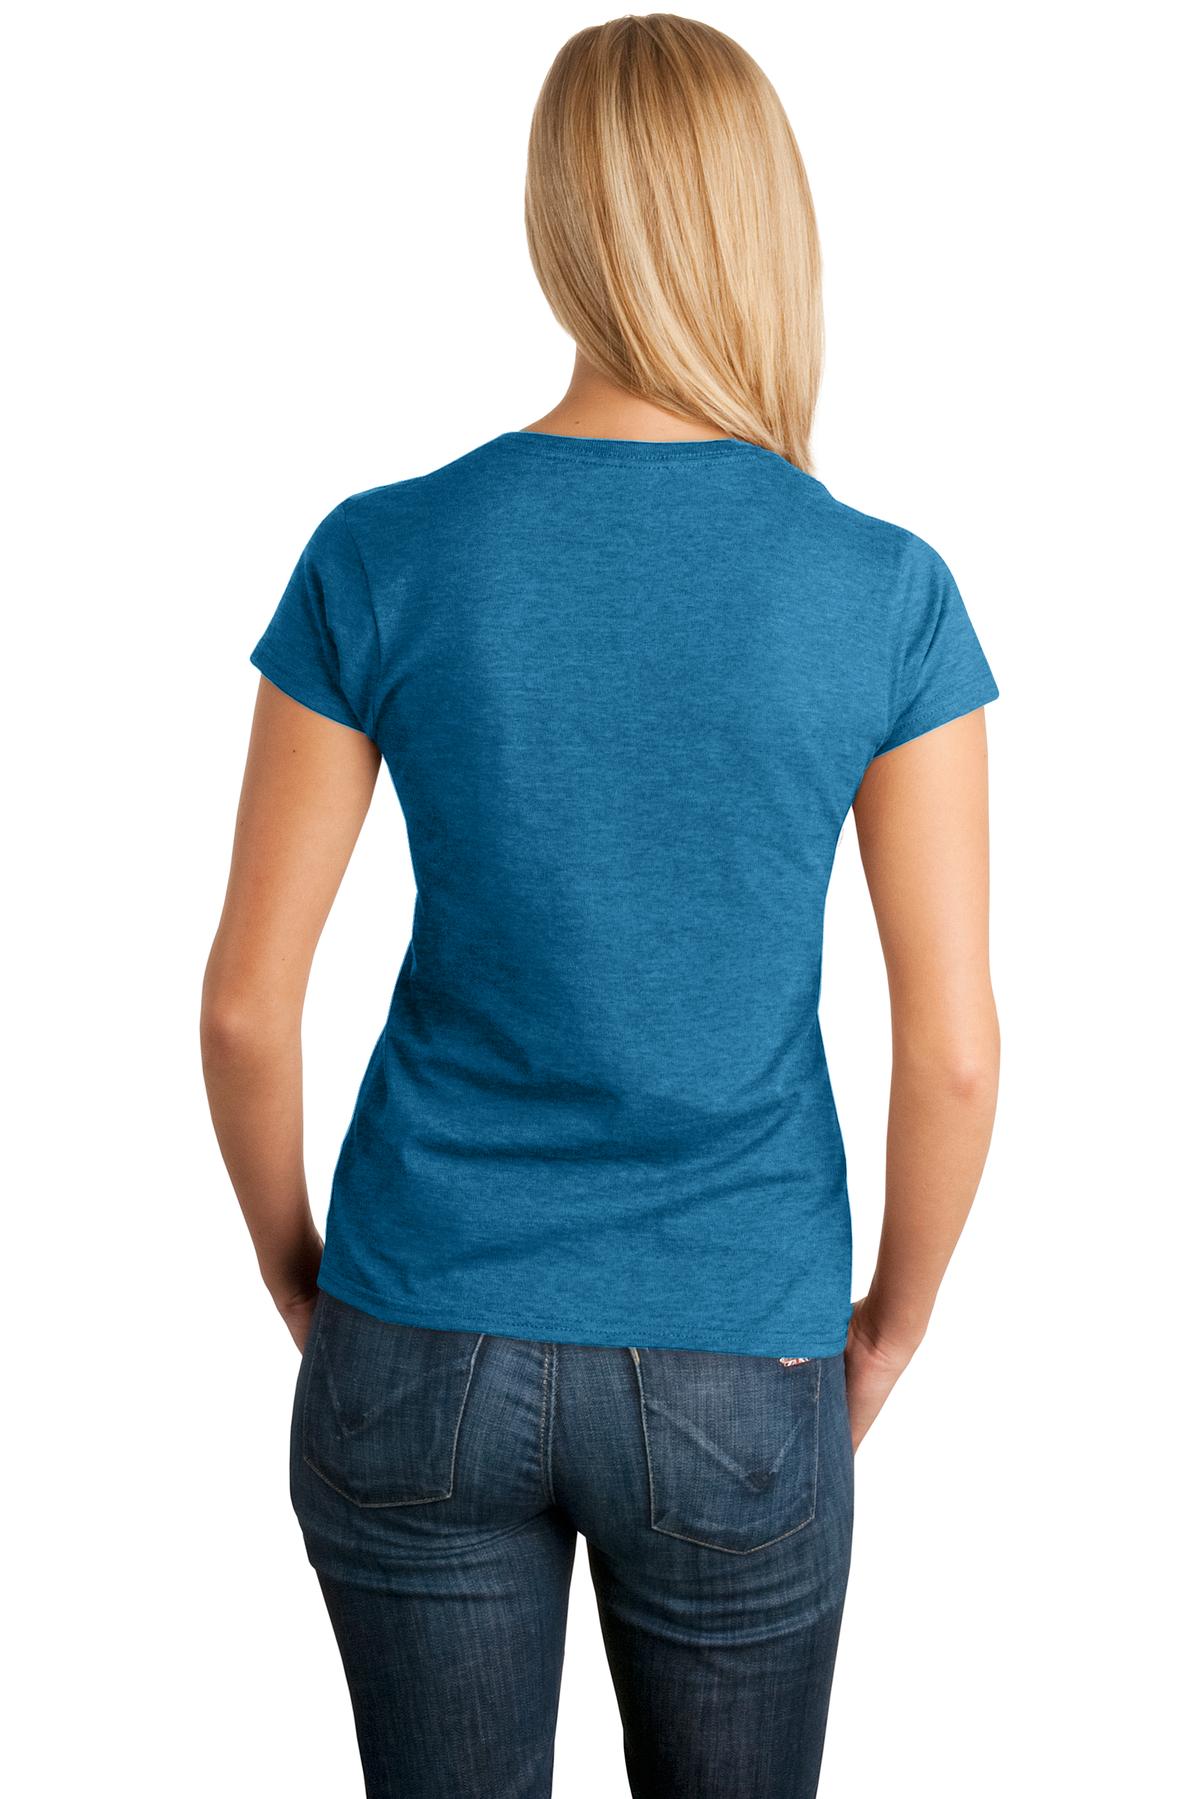 Gildan Softstyle® Ladies T-Shirt. 64000L [Antique Sapphire] - DFW Impression